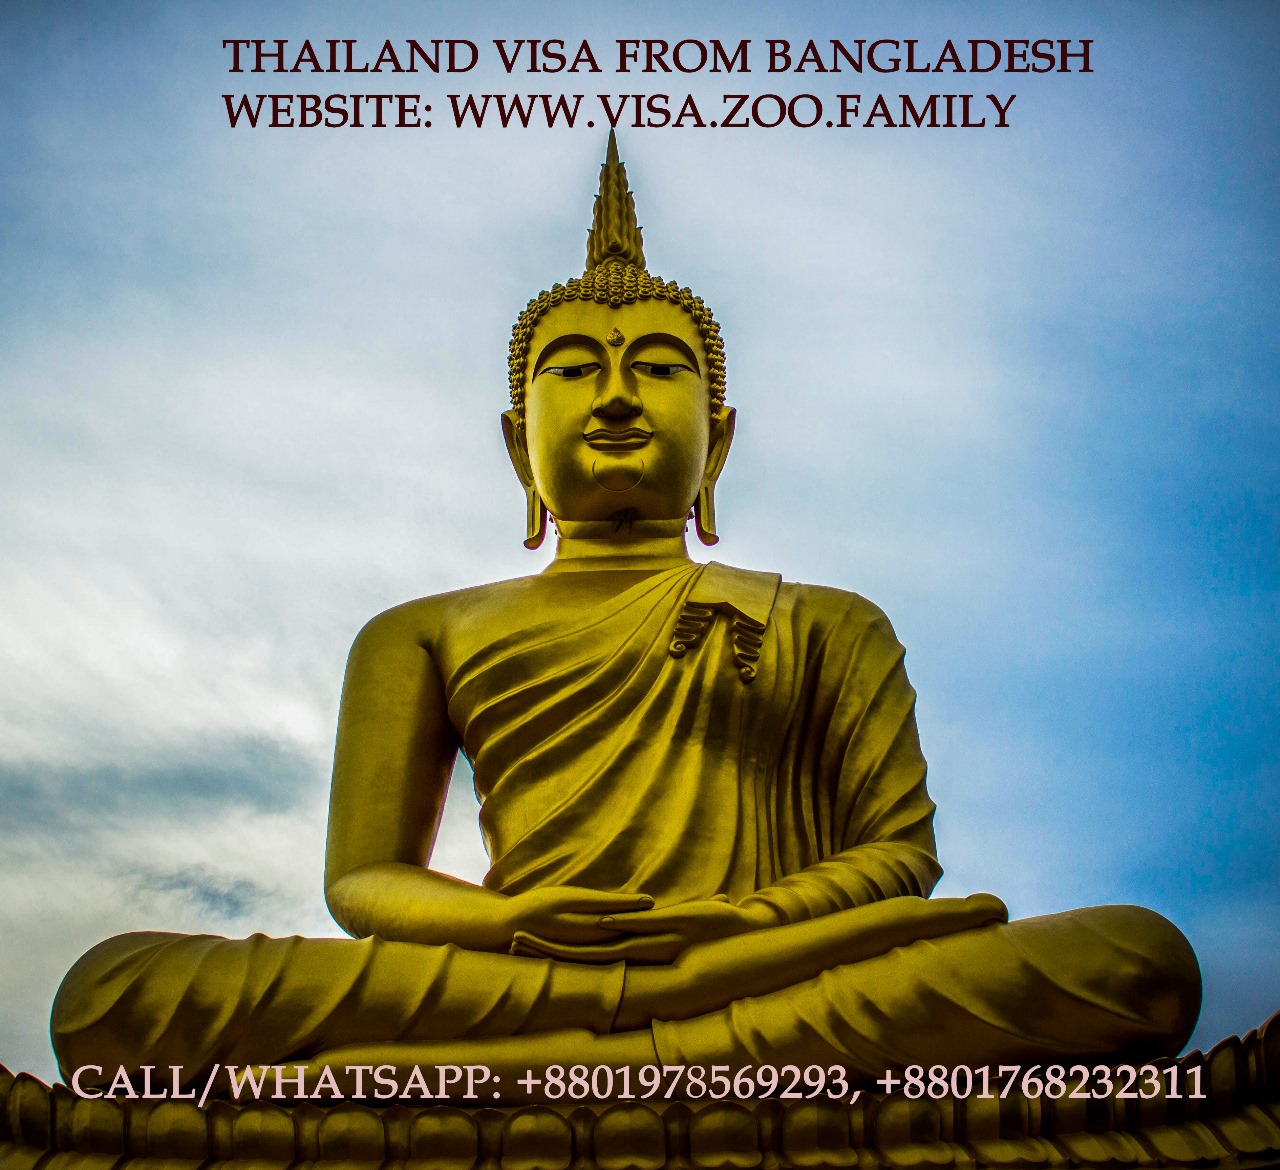 Thailand Visa From Bangladesh